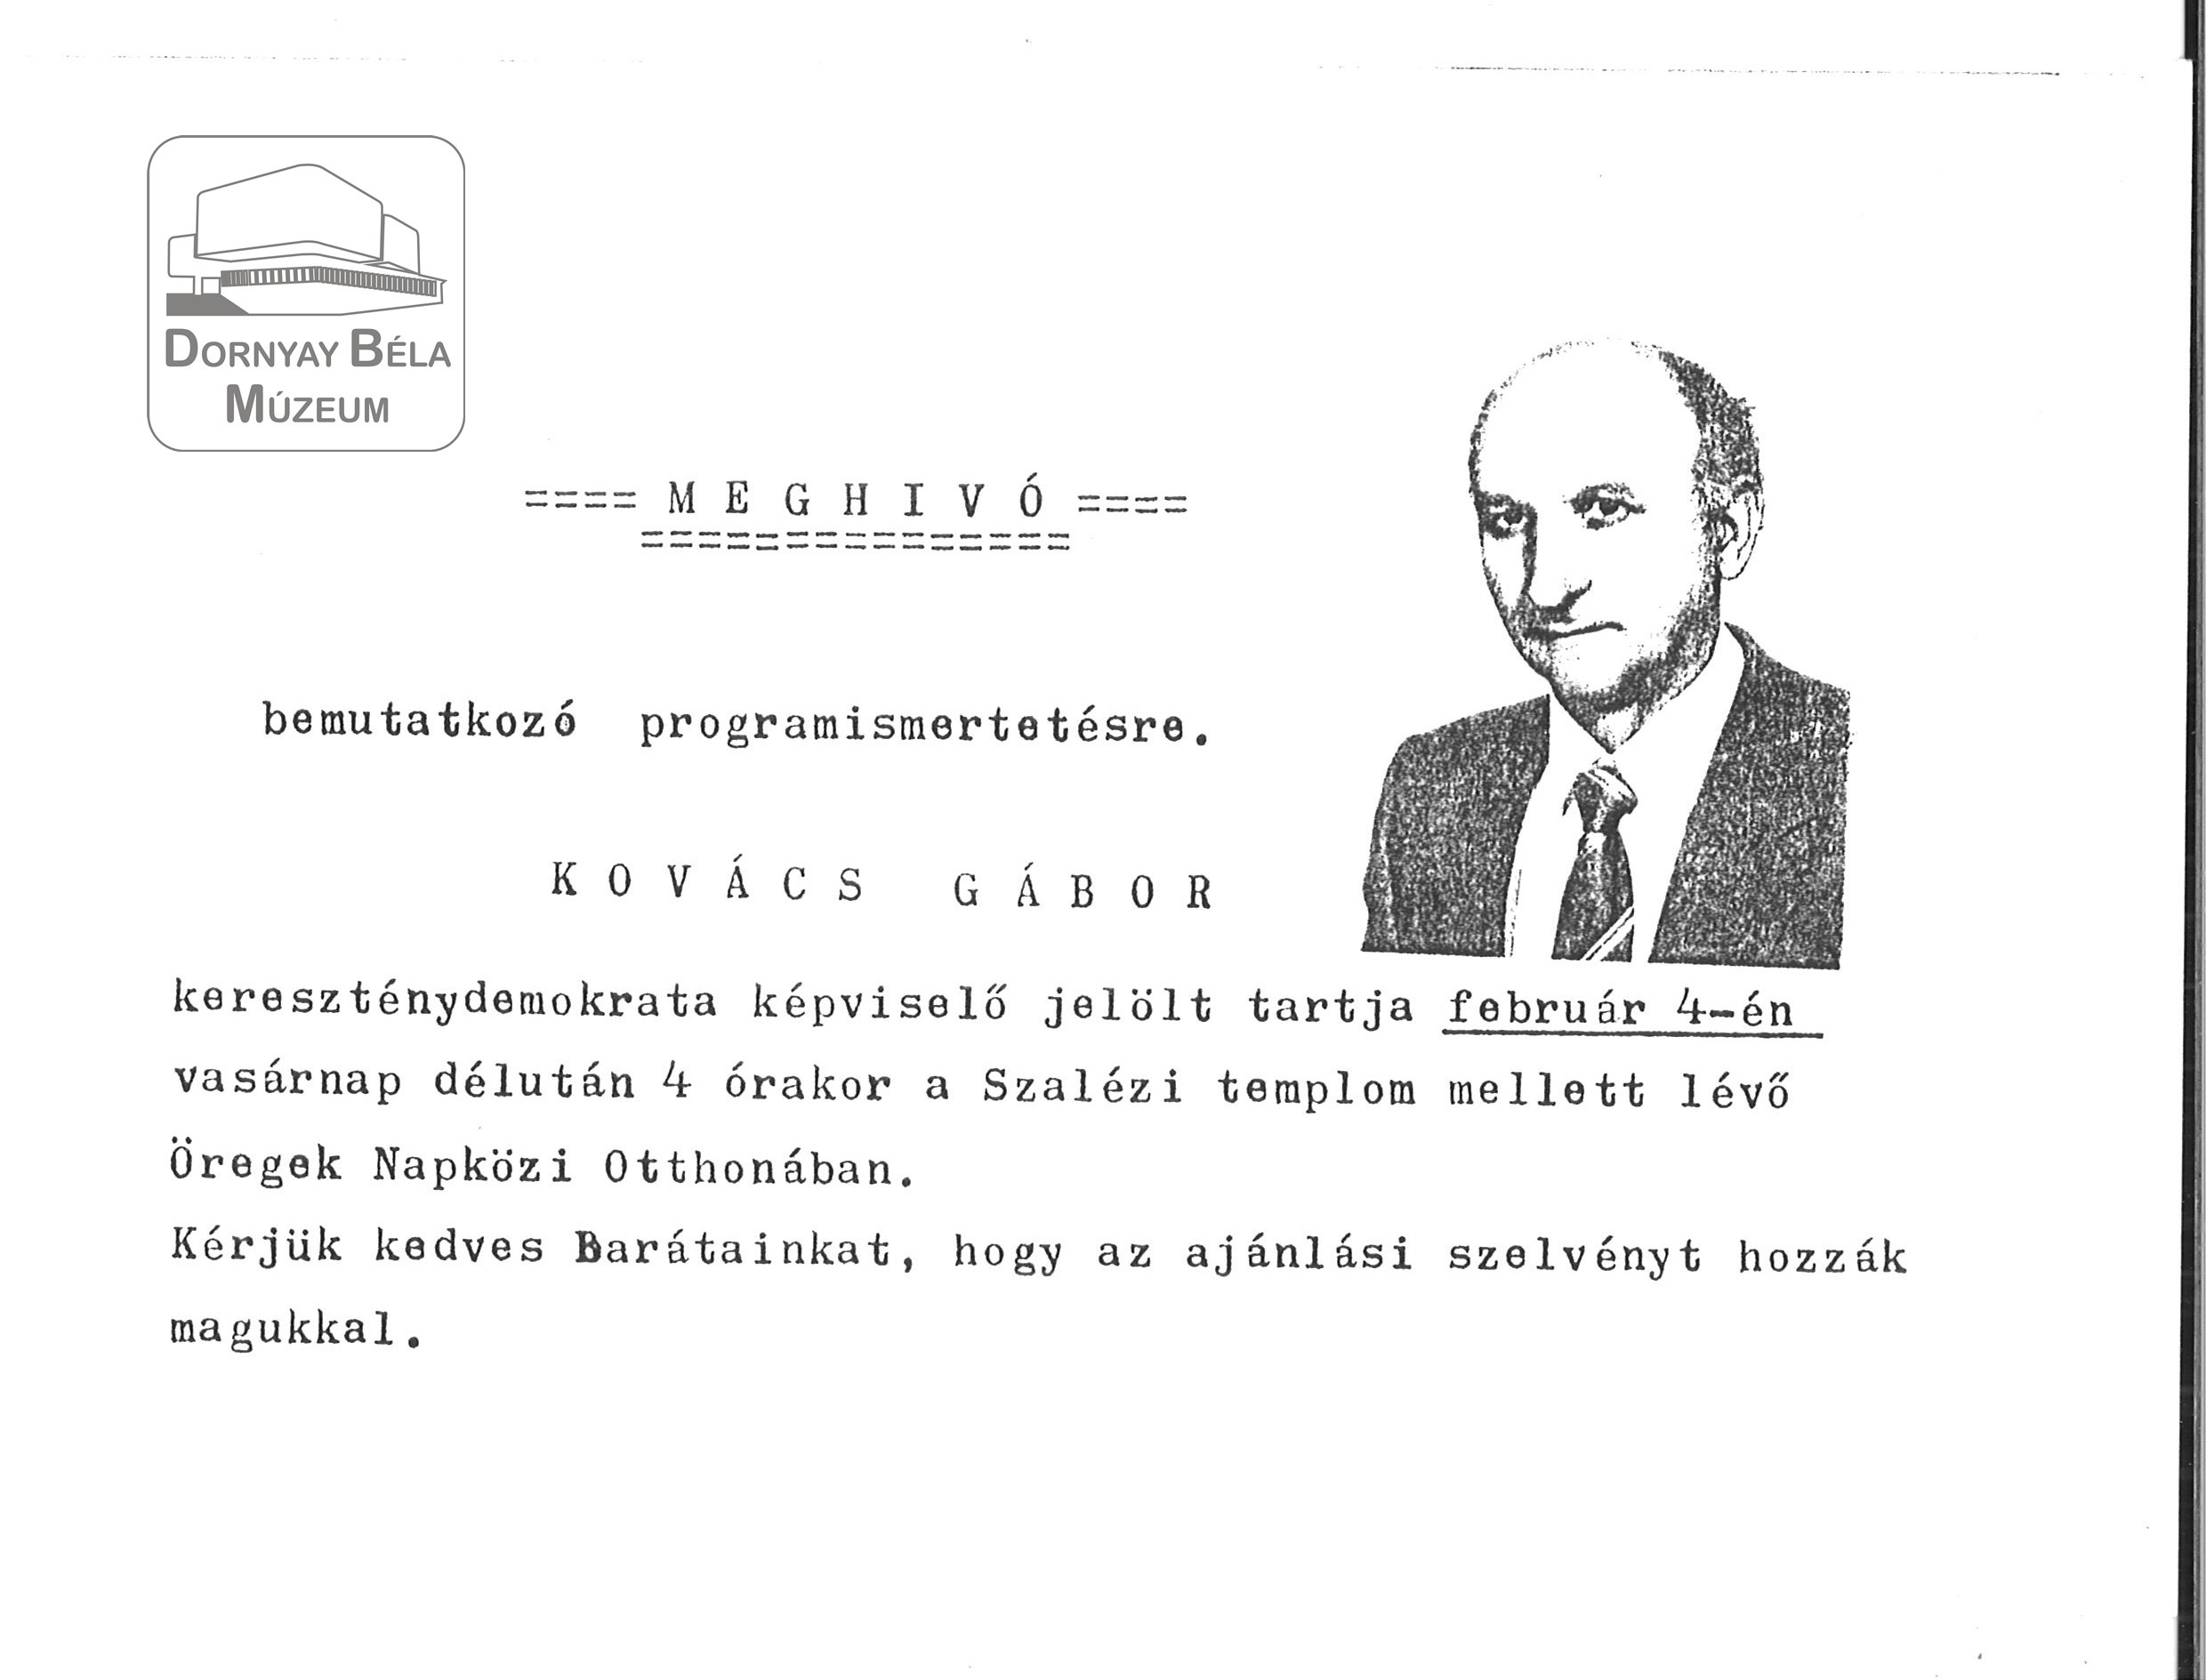 Kovács Gábor balassagyarmati kereszténydemokrata jelölt bemutatkozó program-ismertetőjére meghívás. (Dornyay Béla Múzeum, Salgótarján CC BY-NC-SA)